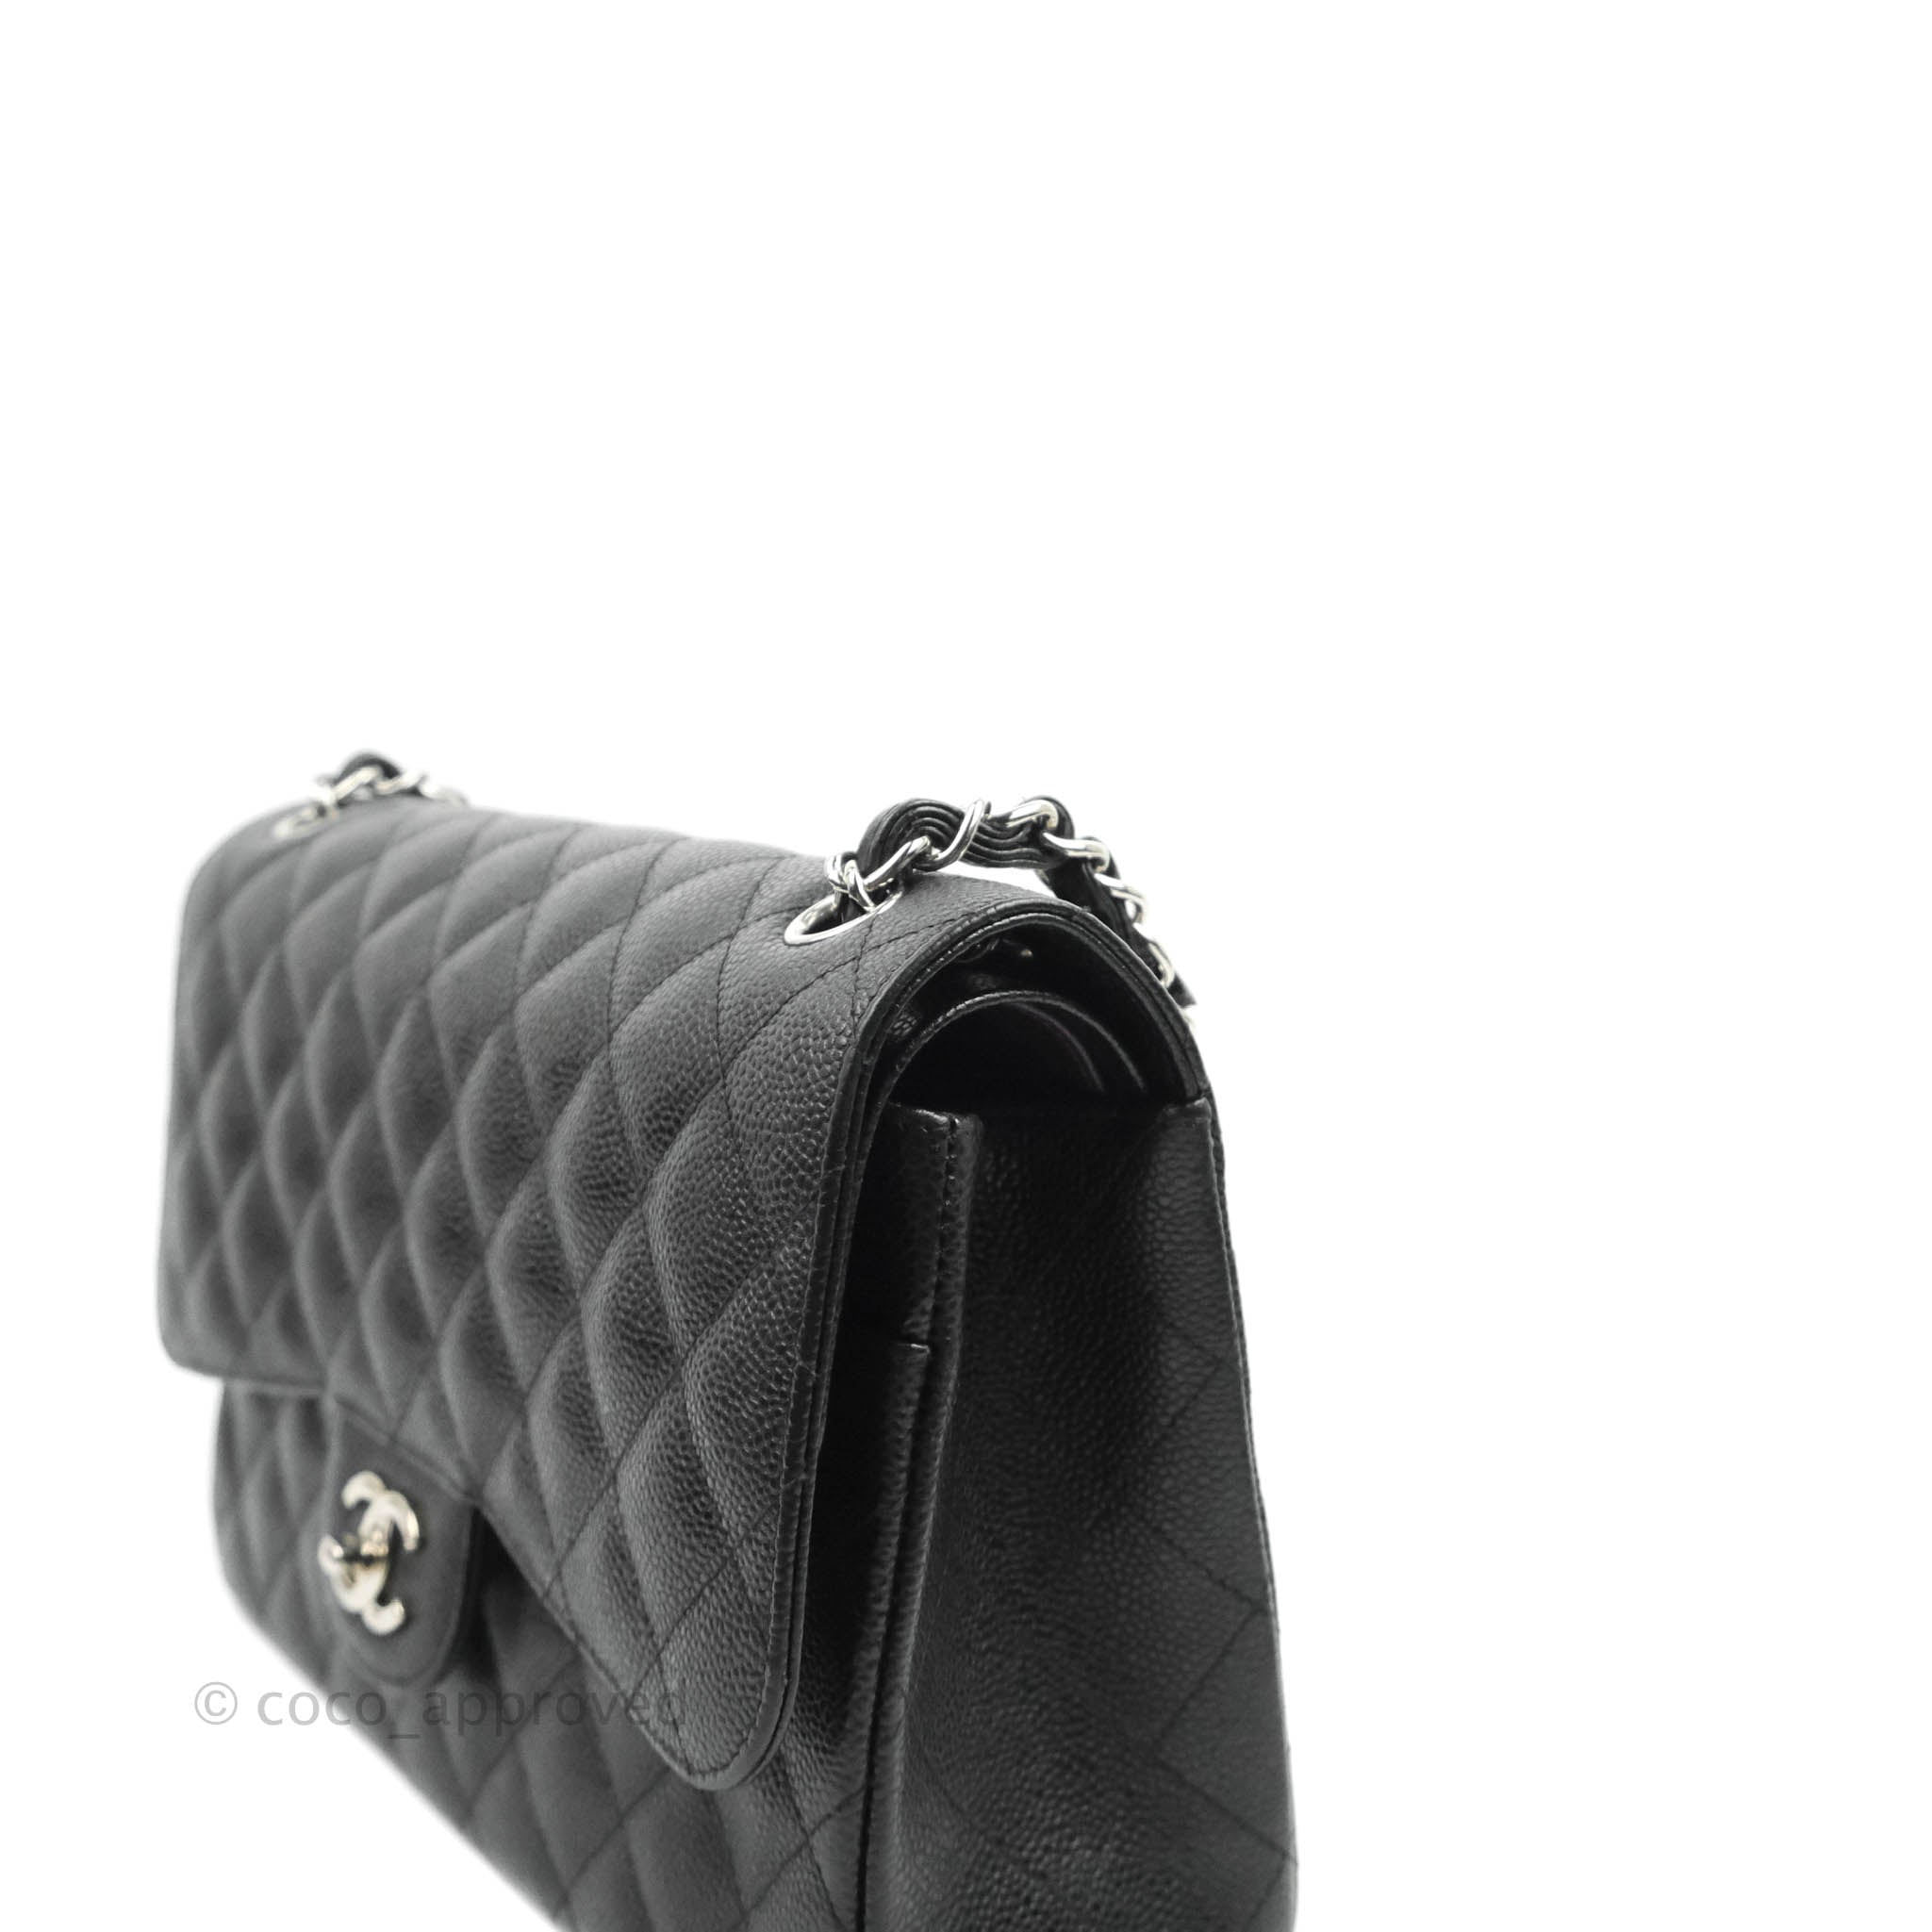 chanel black classic jumbo bag